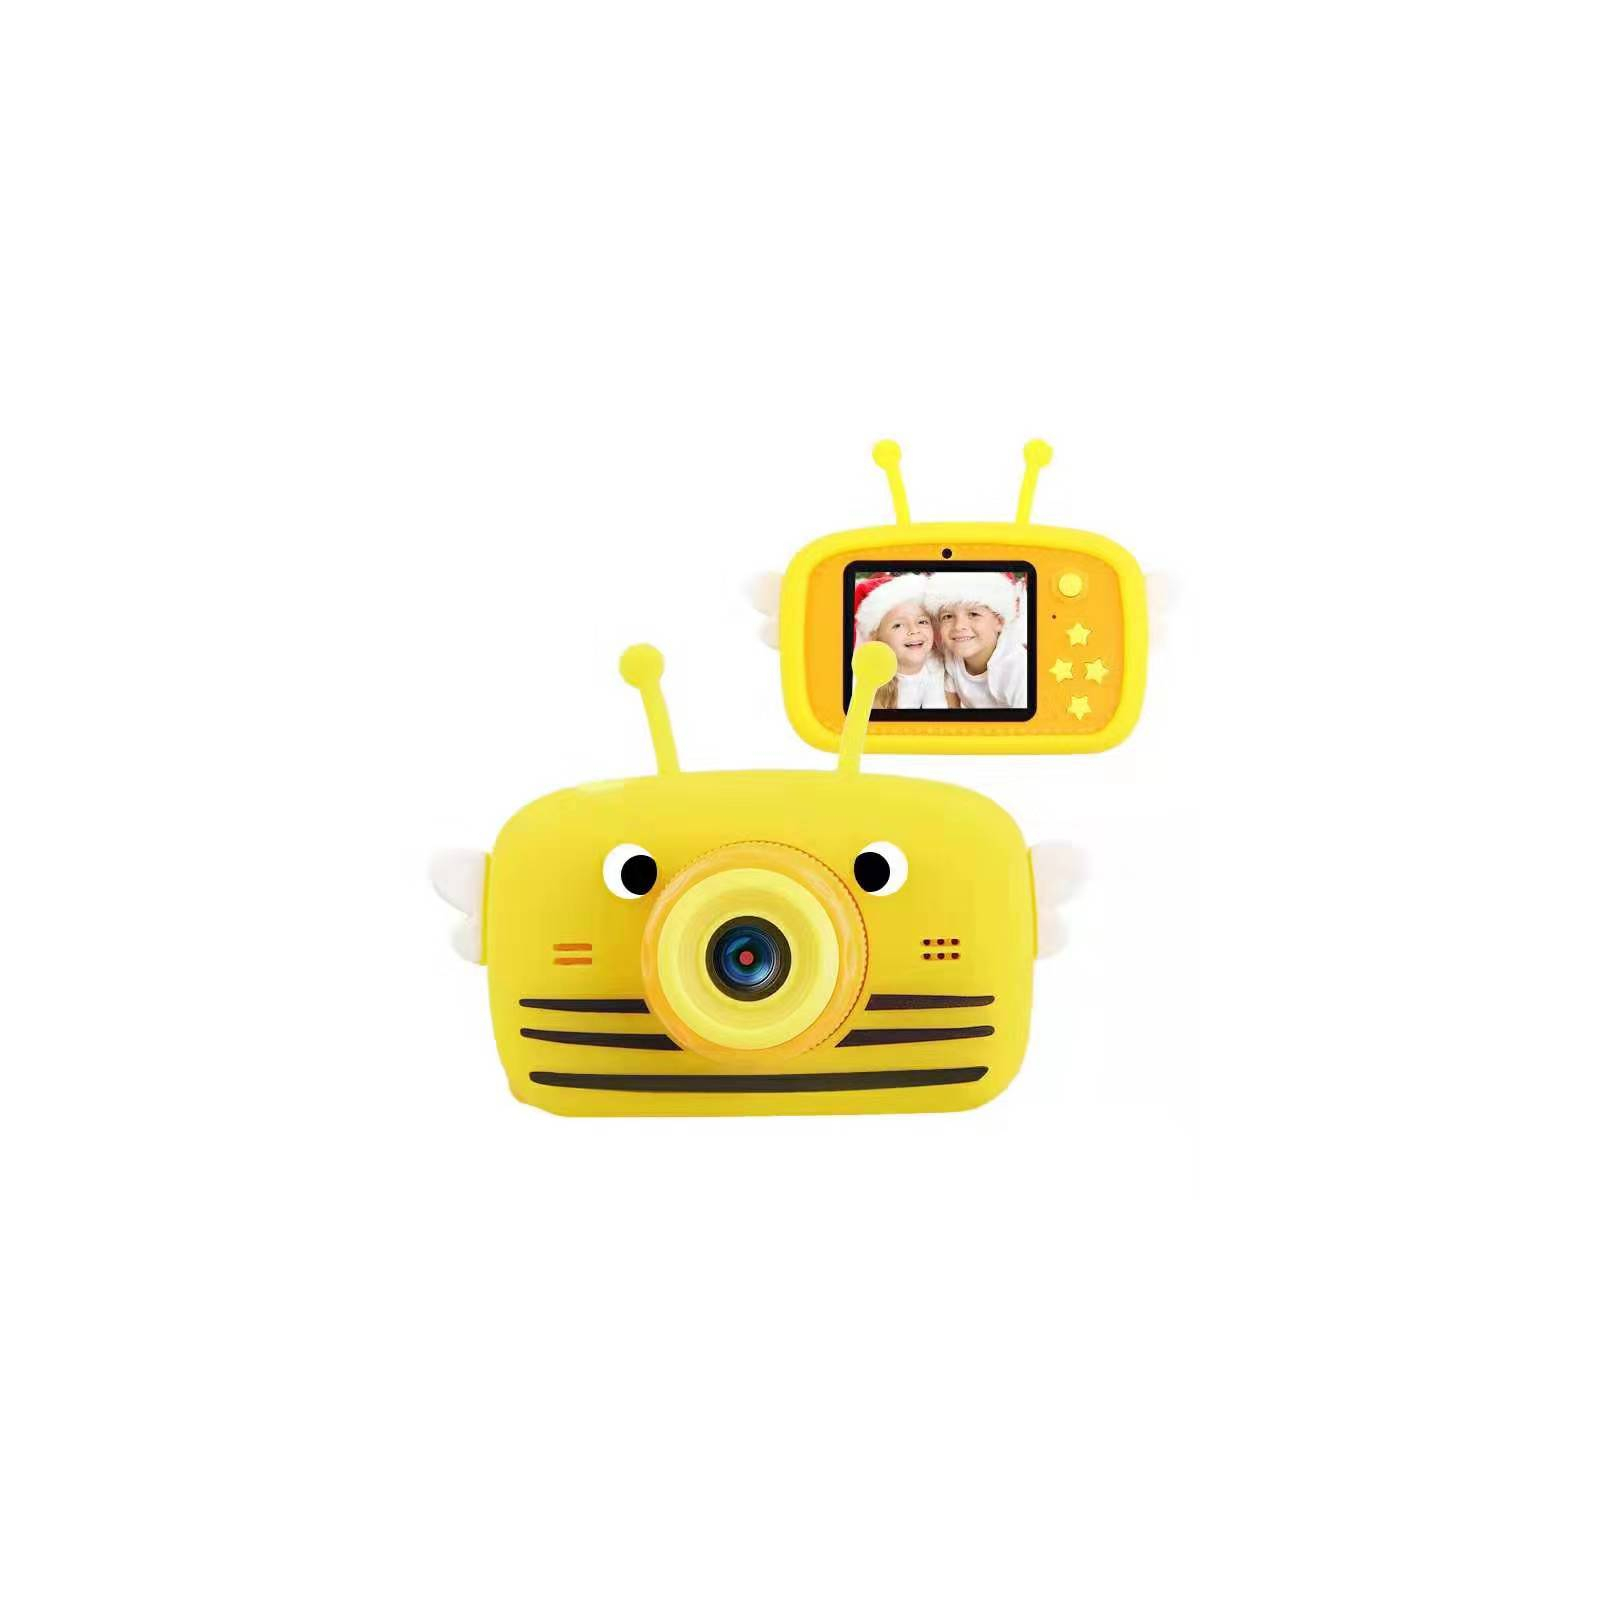 Интерактивная игрушка XoKo Bee Dual Lens Цифровой детский фотоаппарат оранжевый (KVR-100-OR)